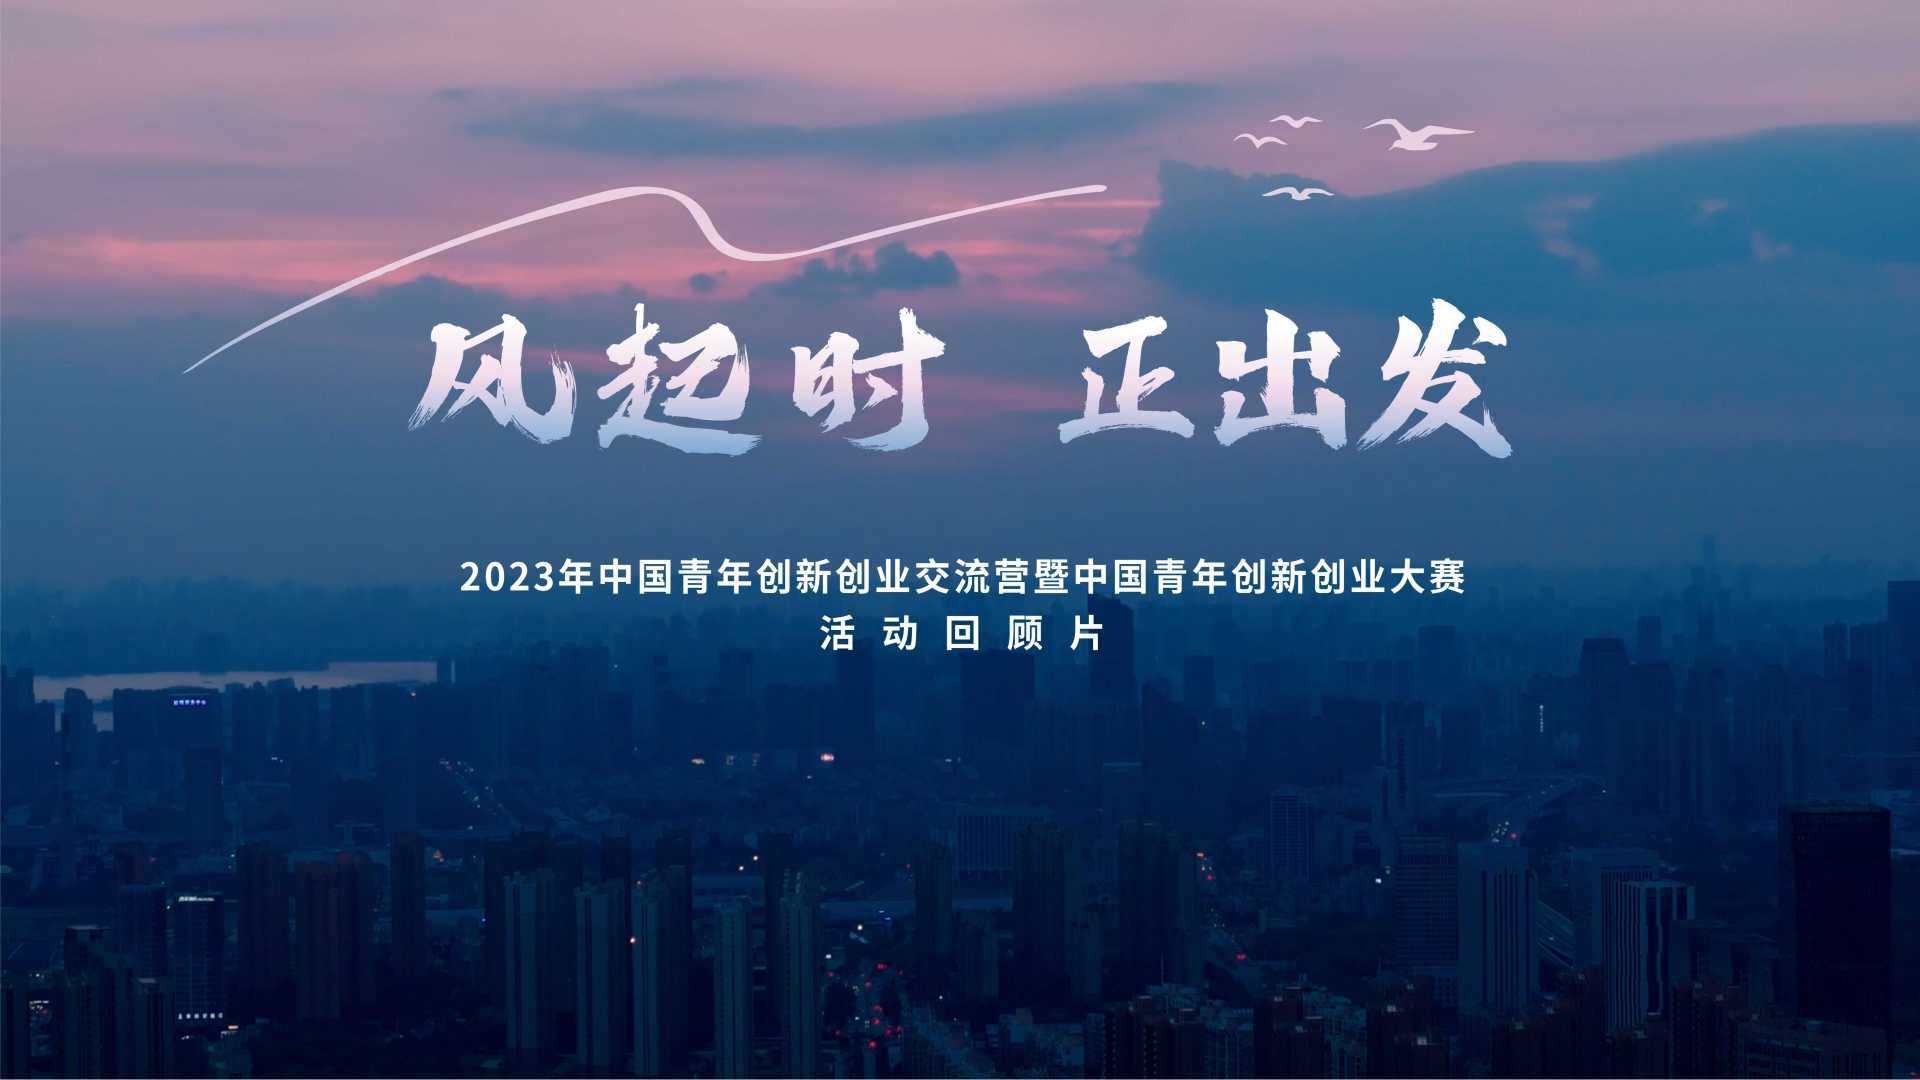 第十届“创青春”中国青年创新创业大赛闭幕式回顾先导片